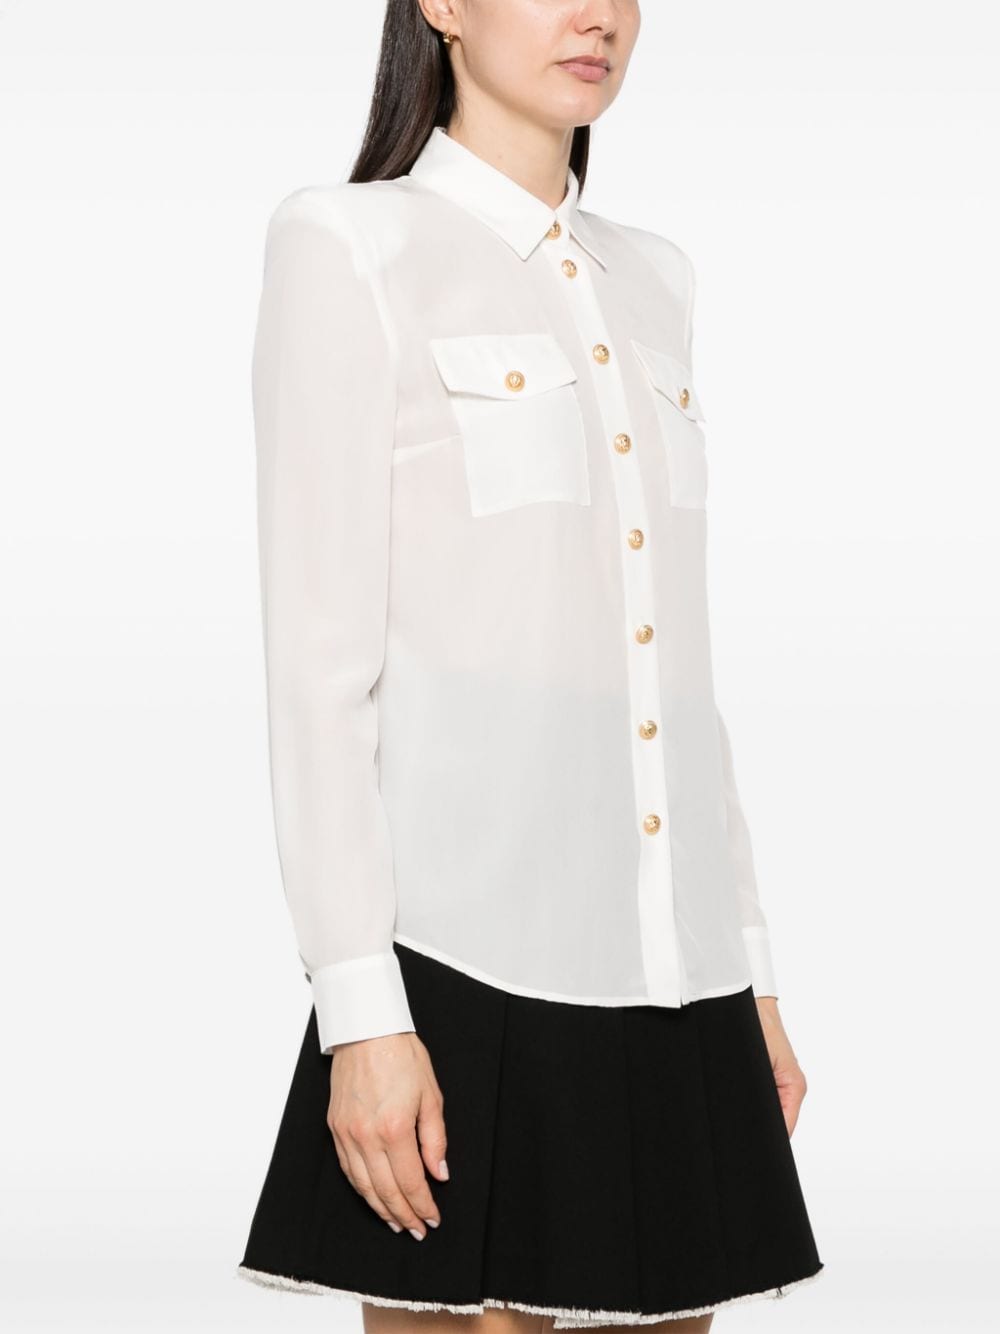 精緻半透明絲質女式襯衫 - 白色